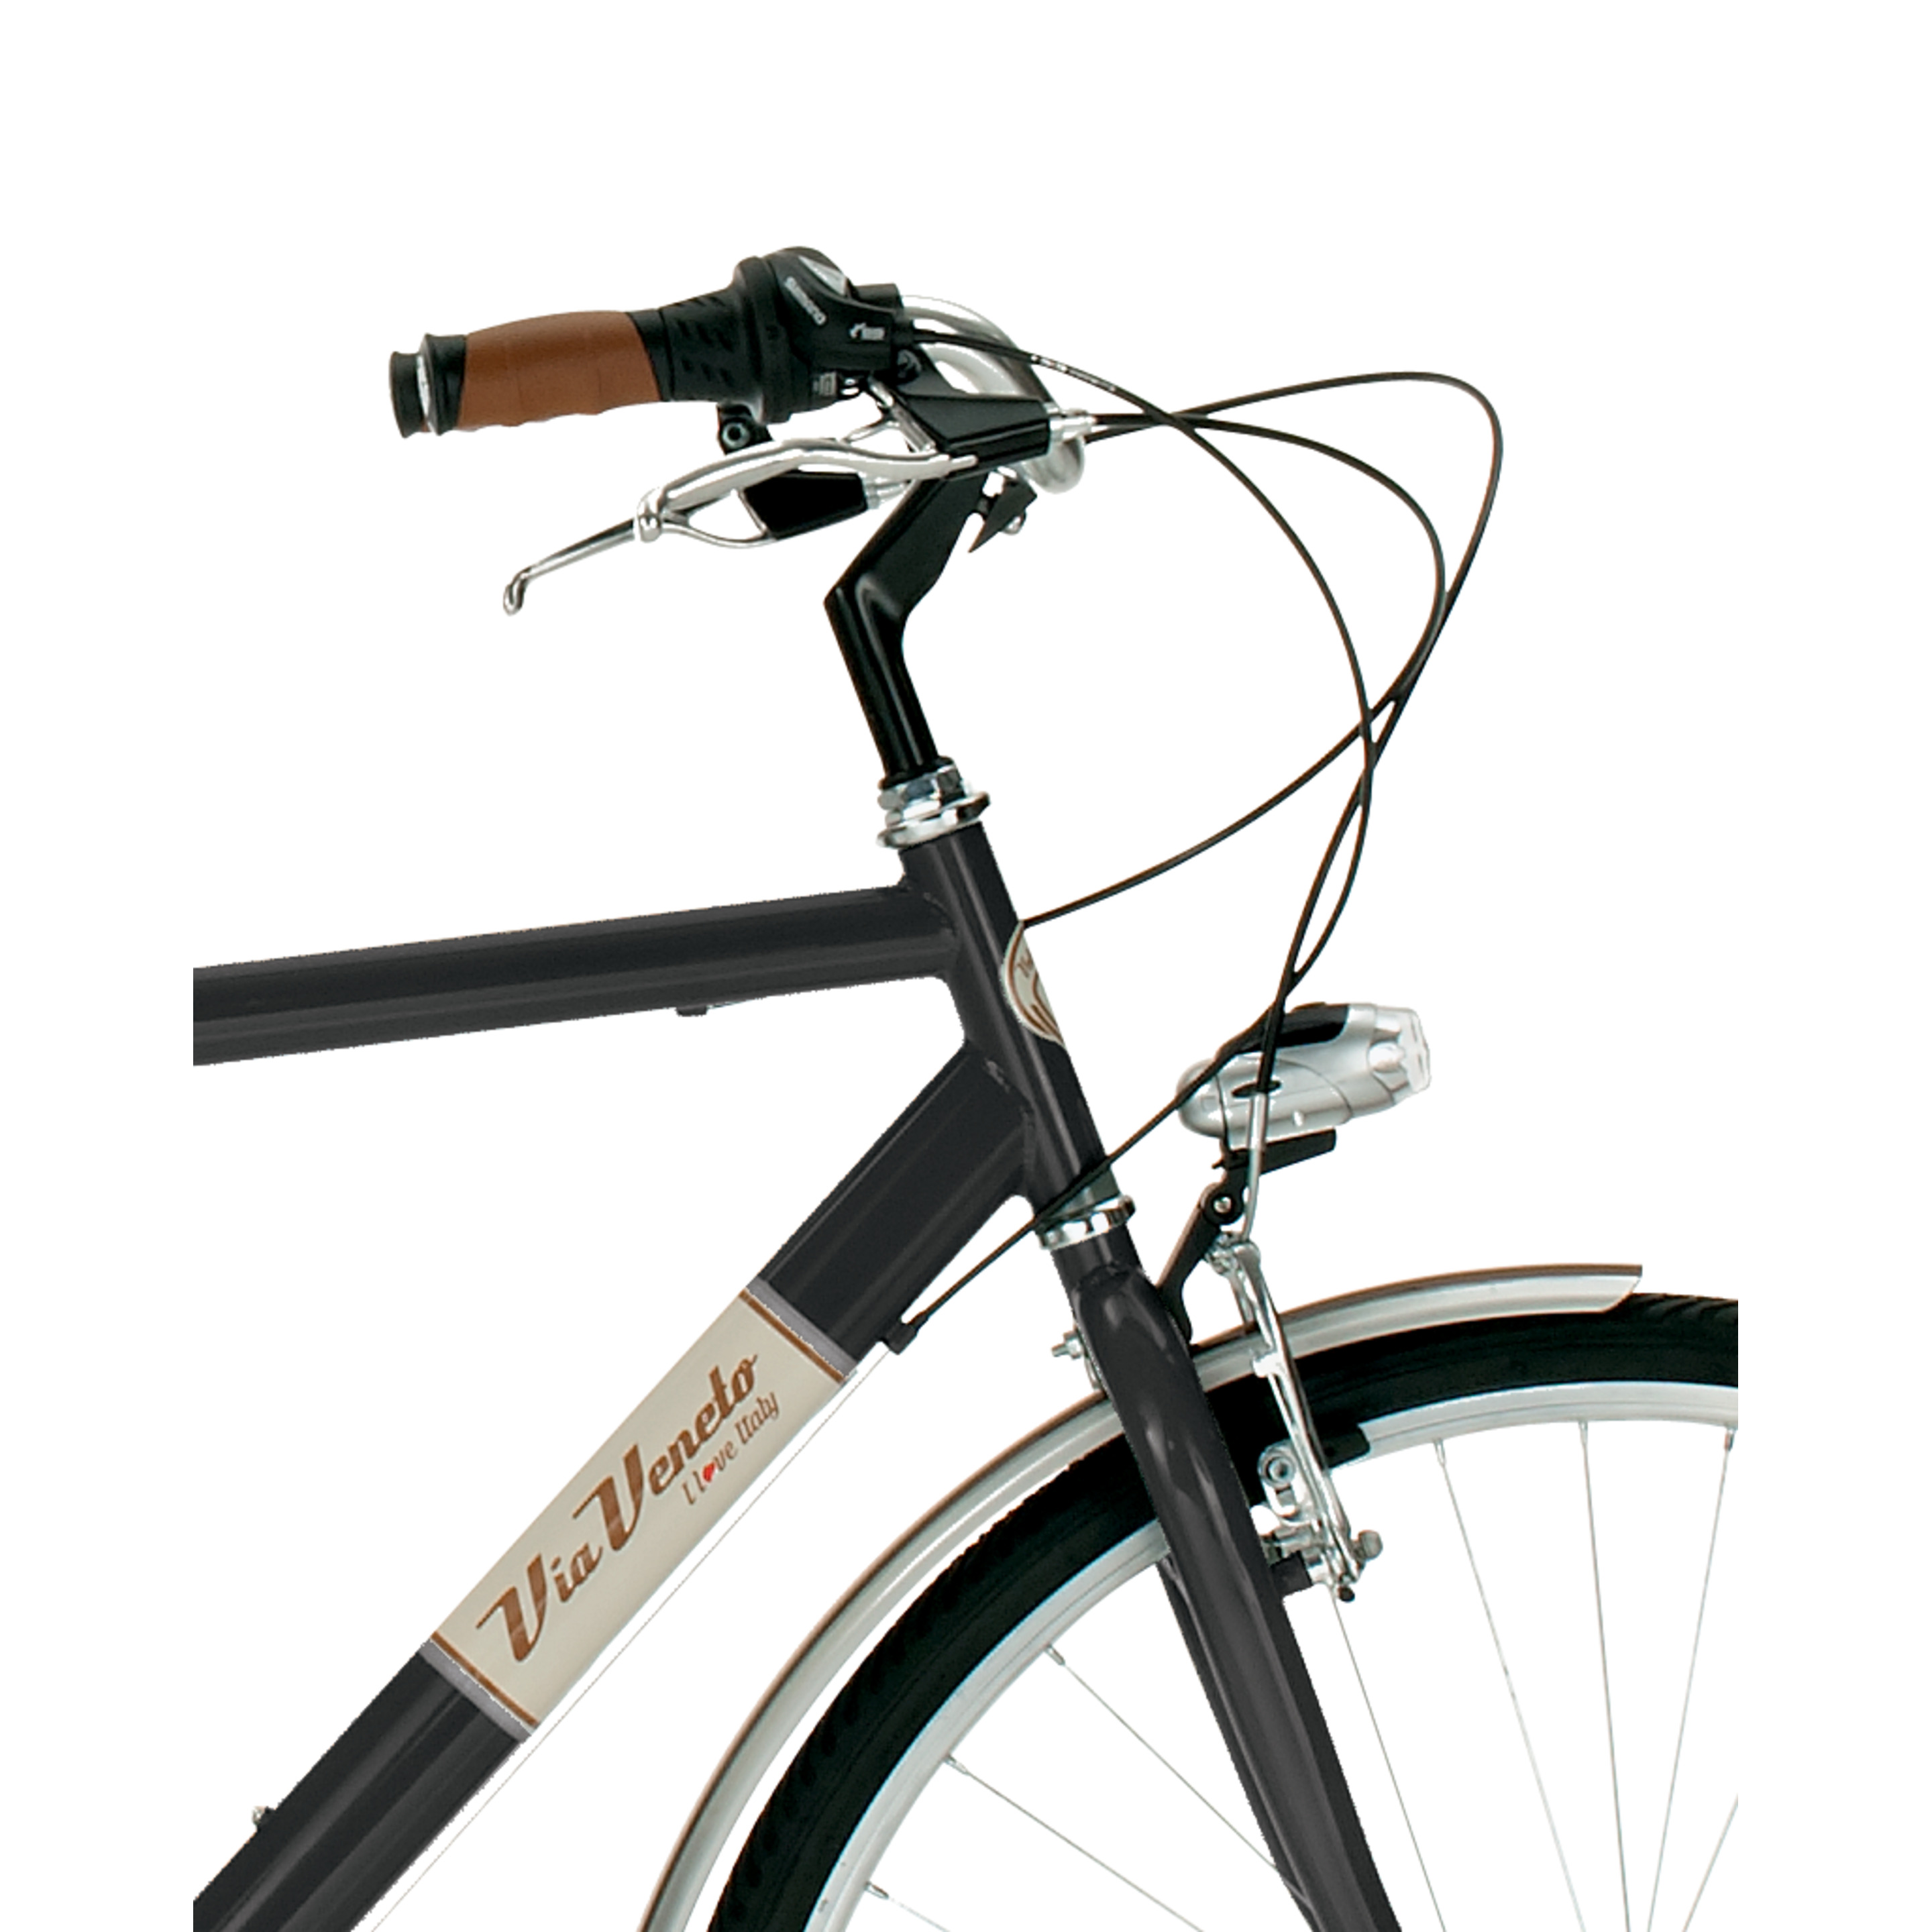 Bicicleta Via Veneto 605man, Cuadro De Acero De 54cm, Ruedas De 700x35c, 6 Velocidades Negra